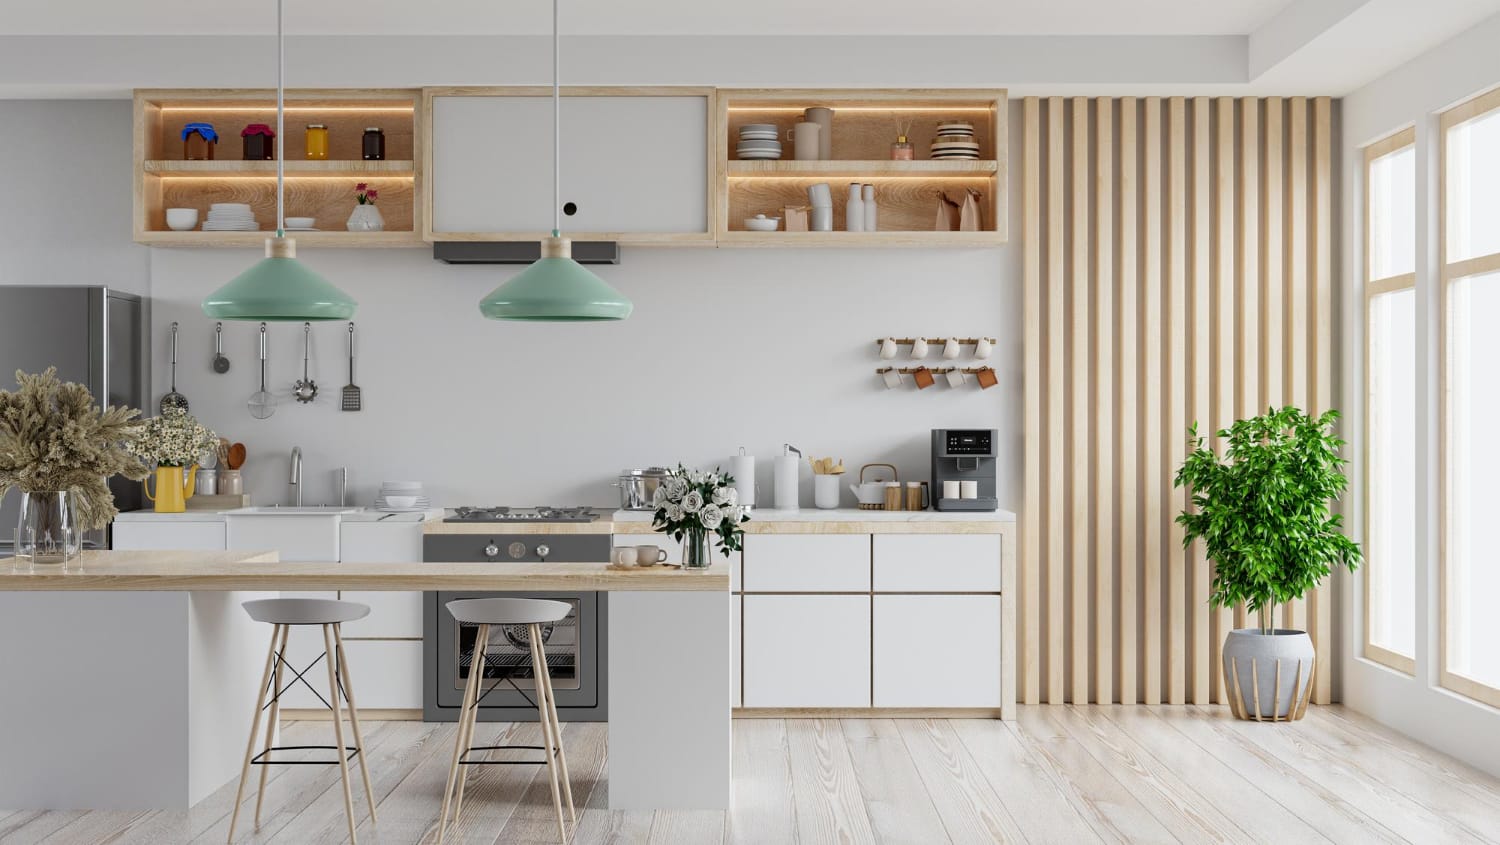 modern-white-kitchen-interior-with-furniturekitchen-interior-with-white-wall